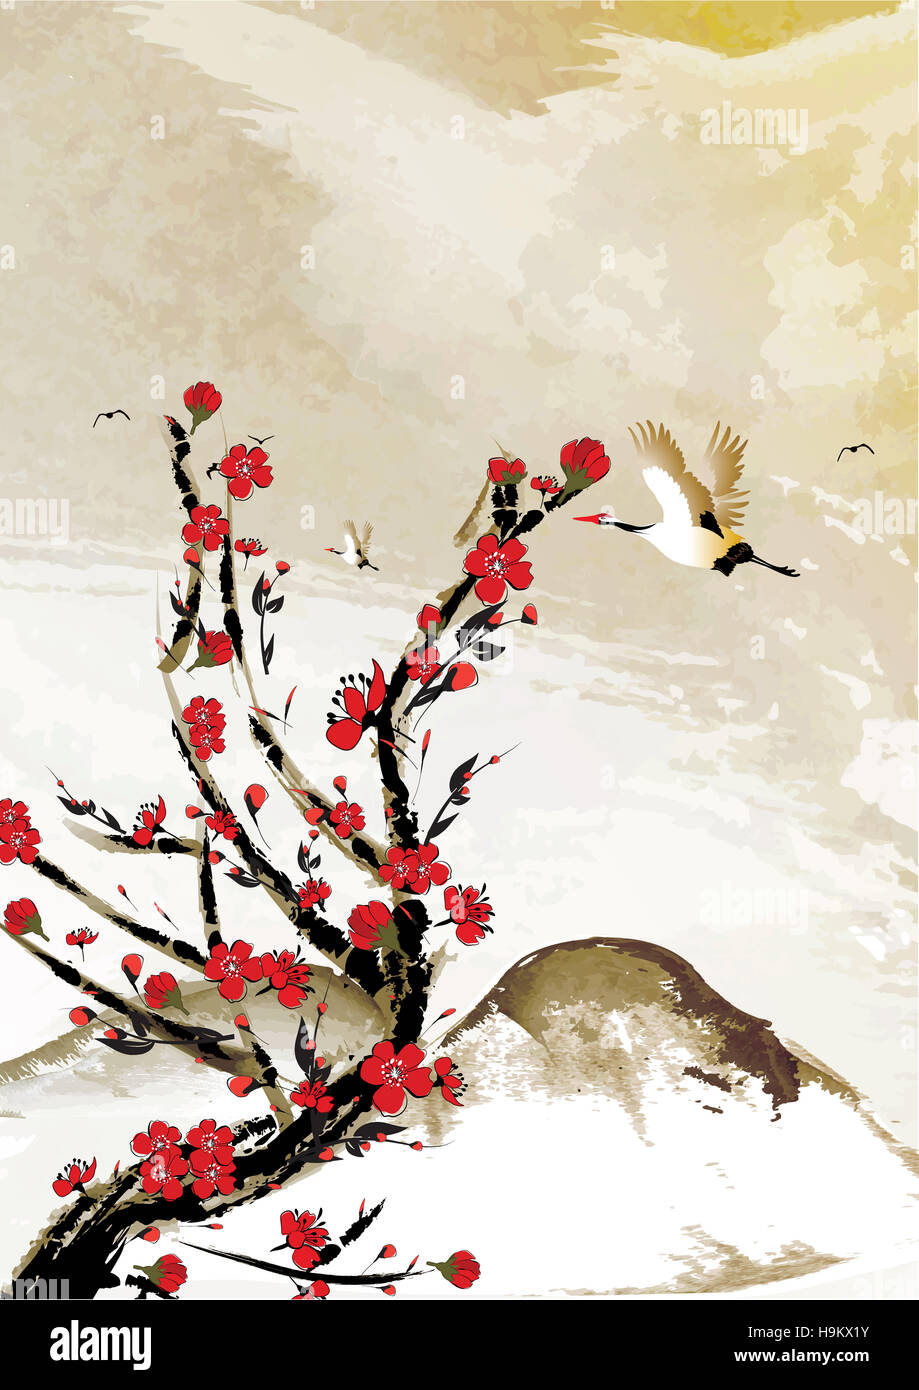 Gebirgshintergrund Kirschenblüten mit Kran Vögel. Japanischen Stil. Ideal für Grußkarten, Poster oder Textur-Design. Stockfoto